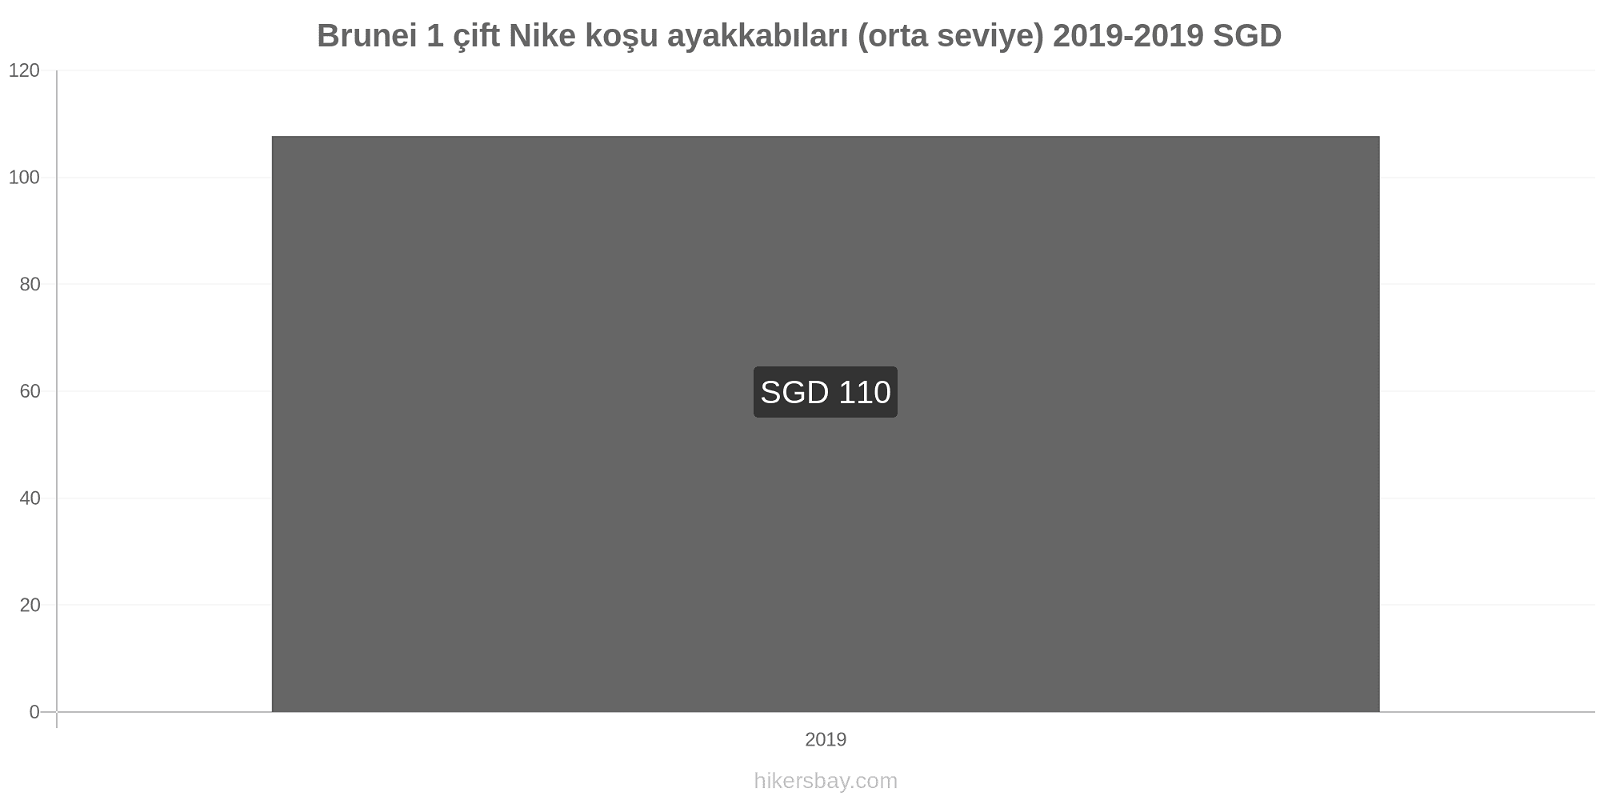 Brunei fiyat değişiklikleri 1 çift Nike koşu ayakkabıları (orta seviye) hikersbay.com